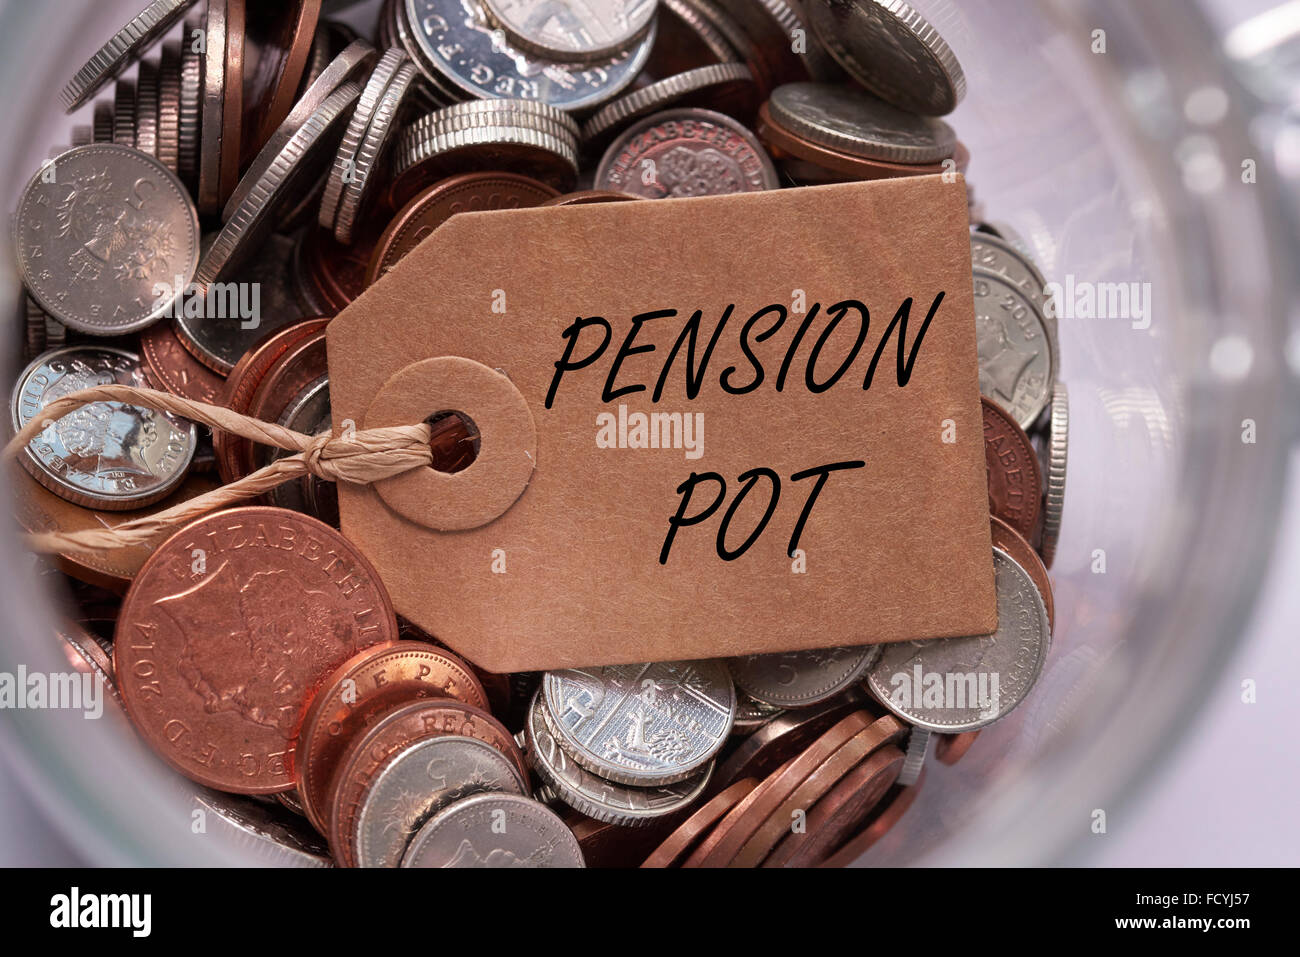 Pension Topf Label auf britische gemischt Münzen in einem Glasbehälter Konzept Konzept Stockfoto